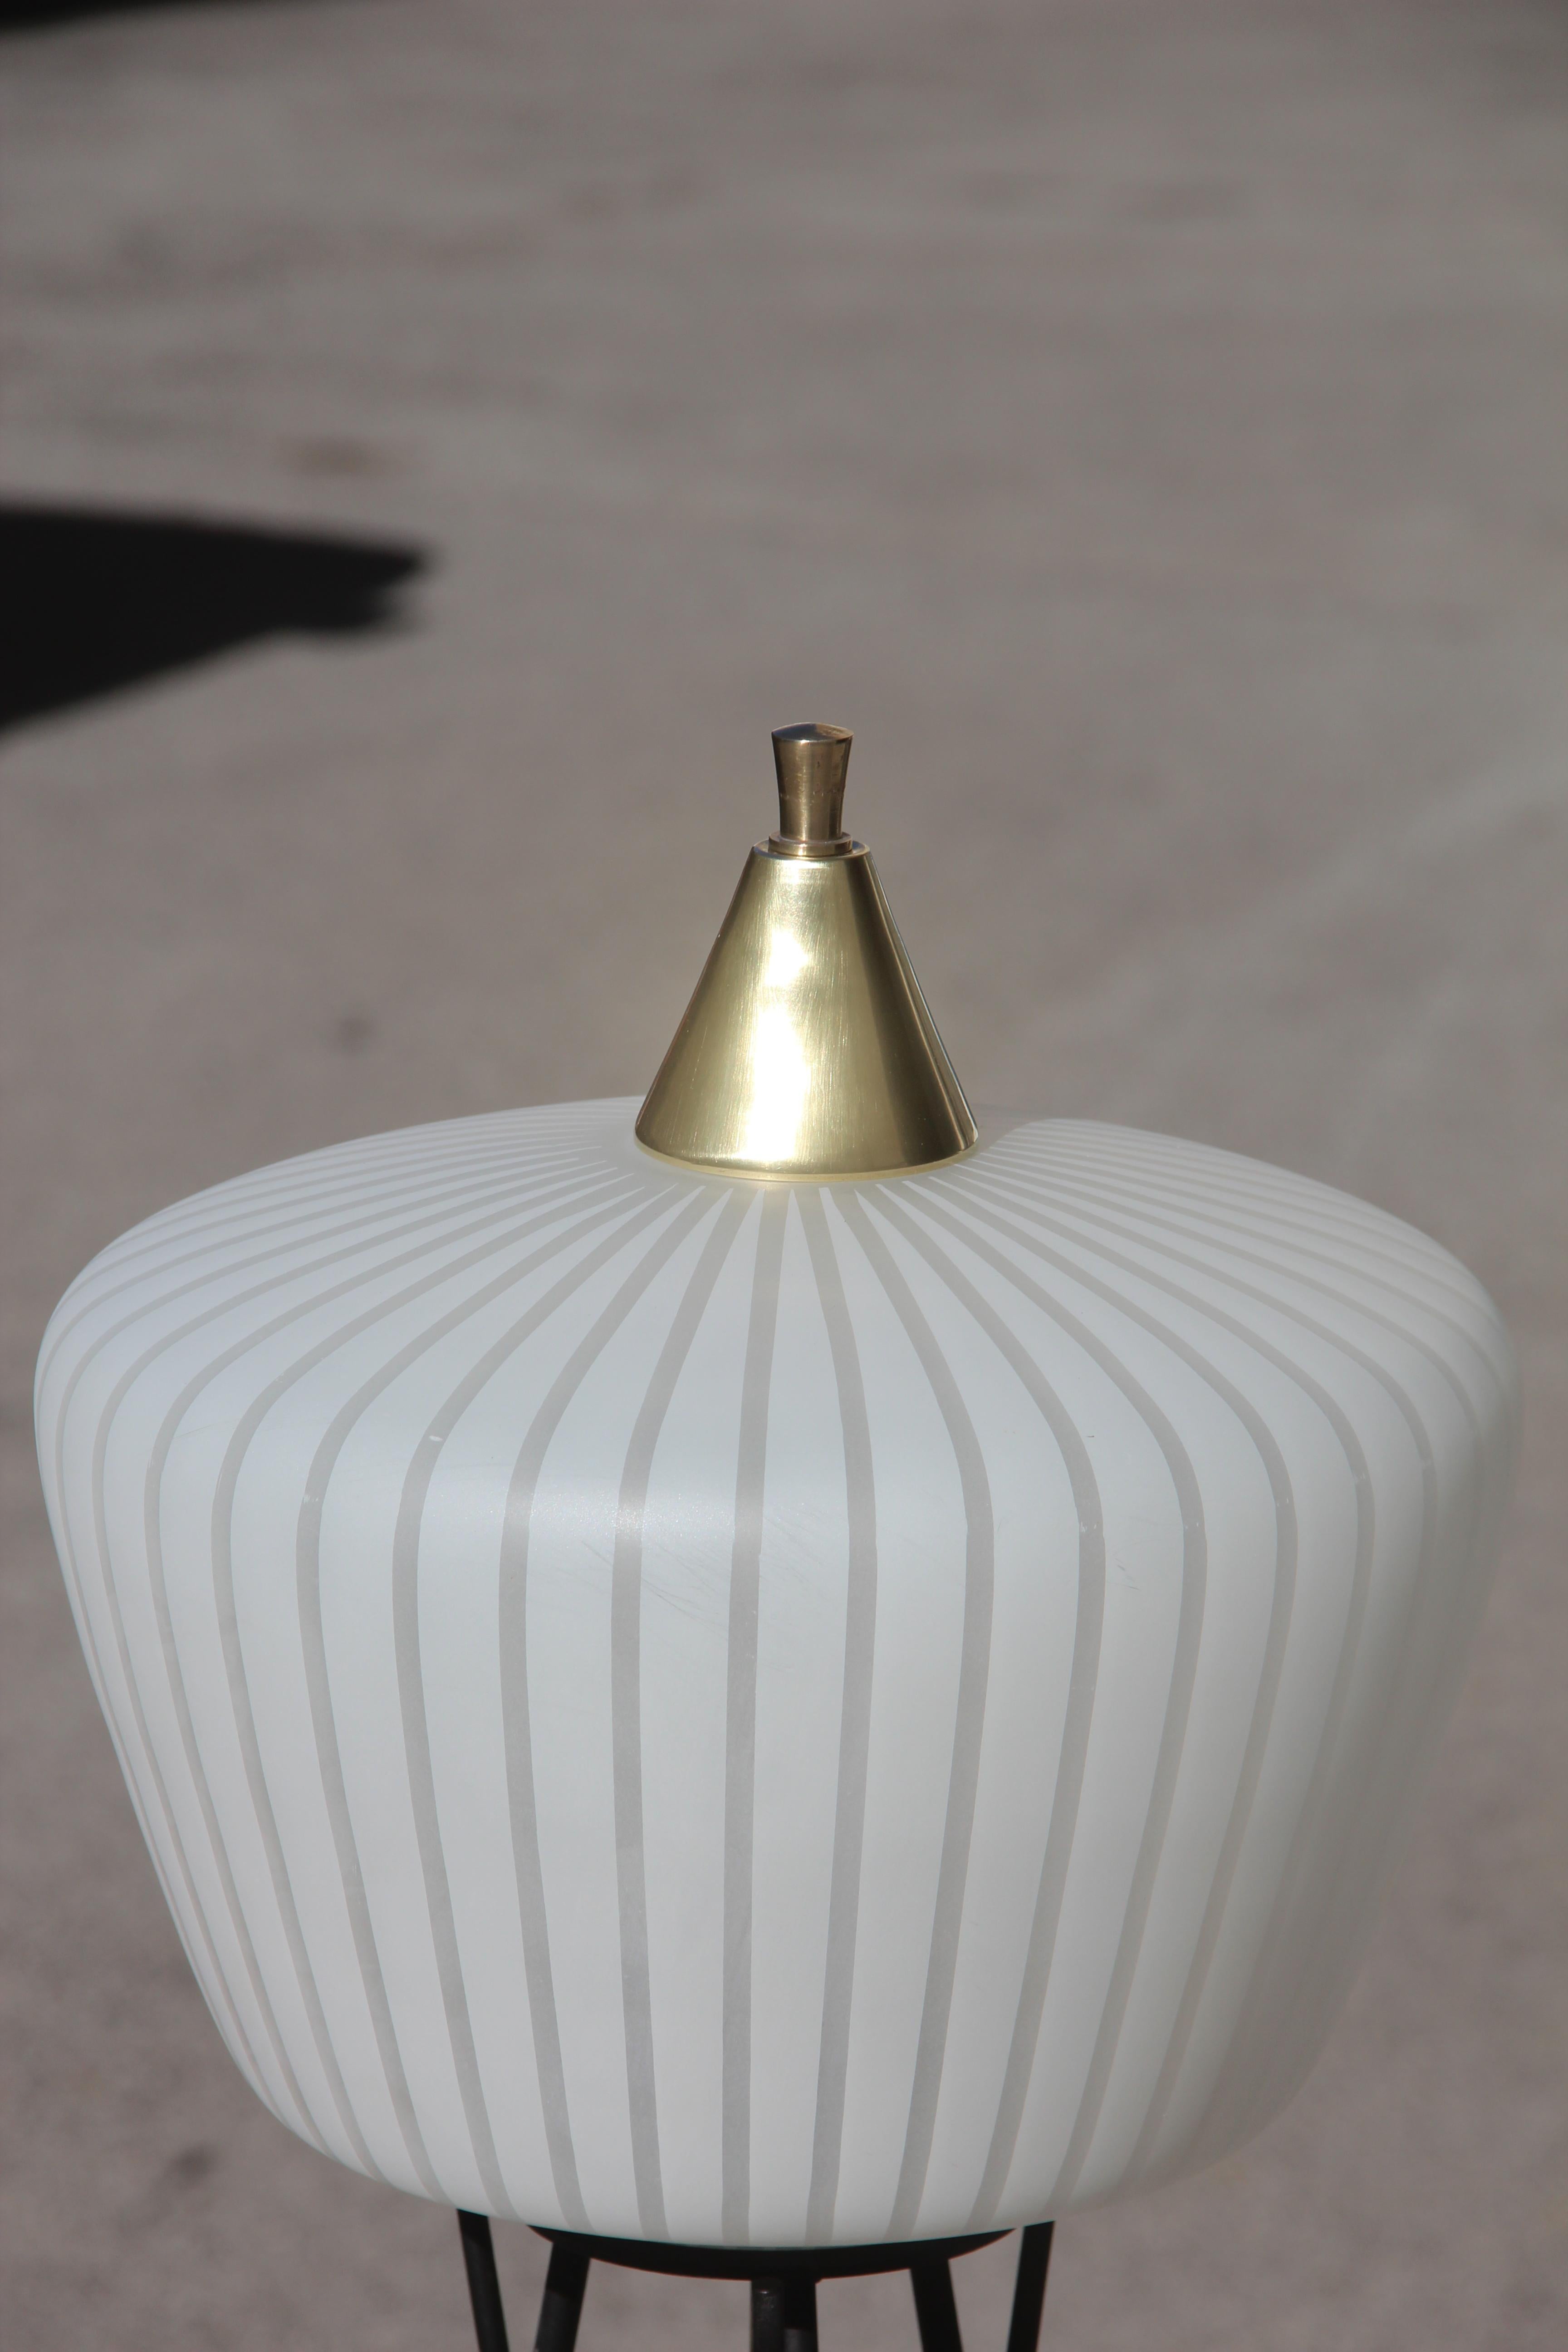 Stilnovo attributed Mid-Century Modern Italian floor lamp glass brass white black color.